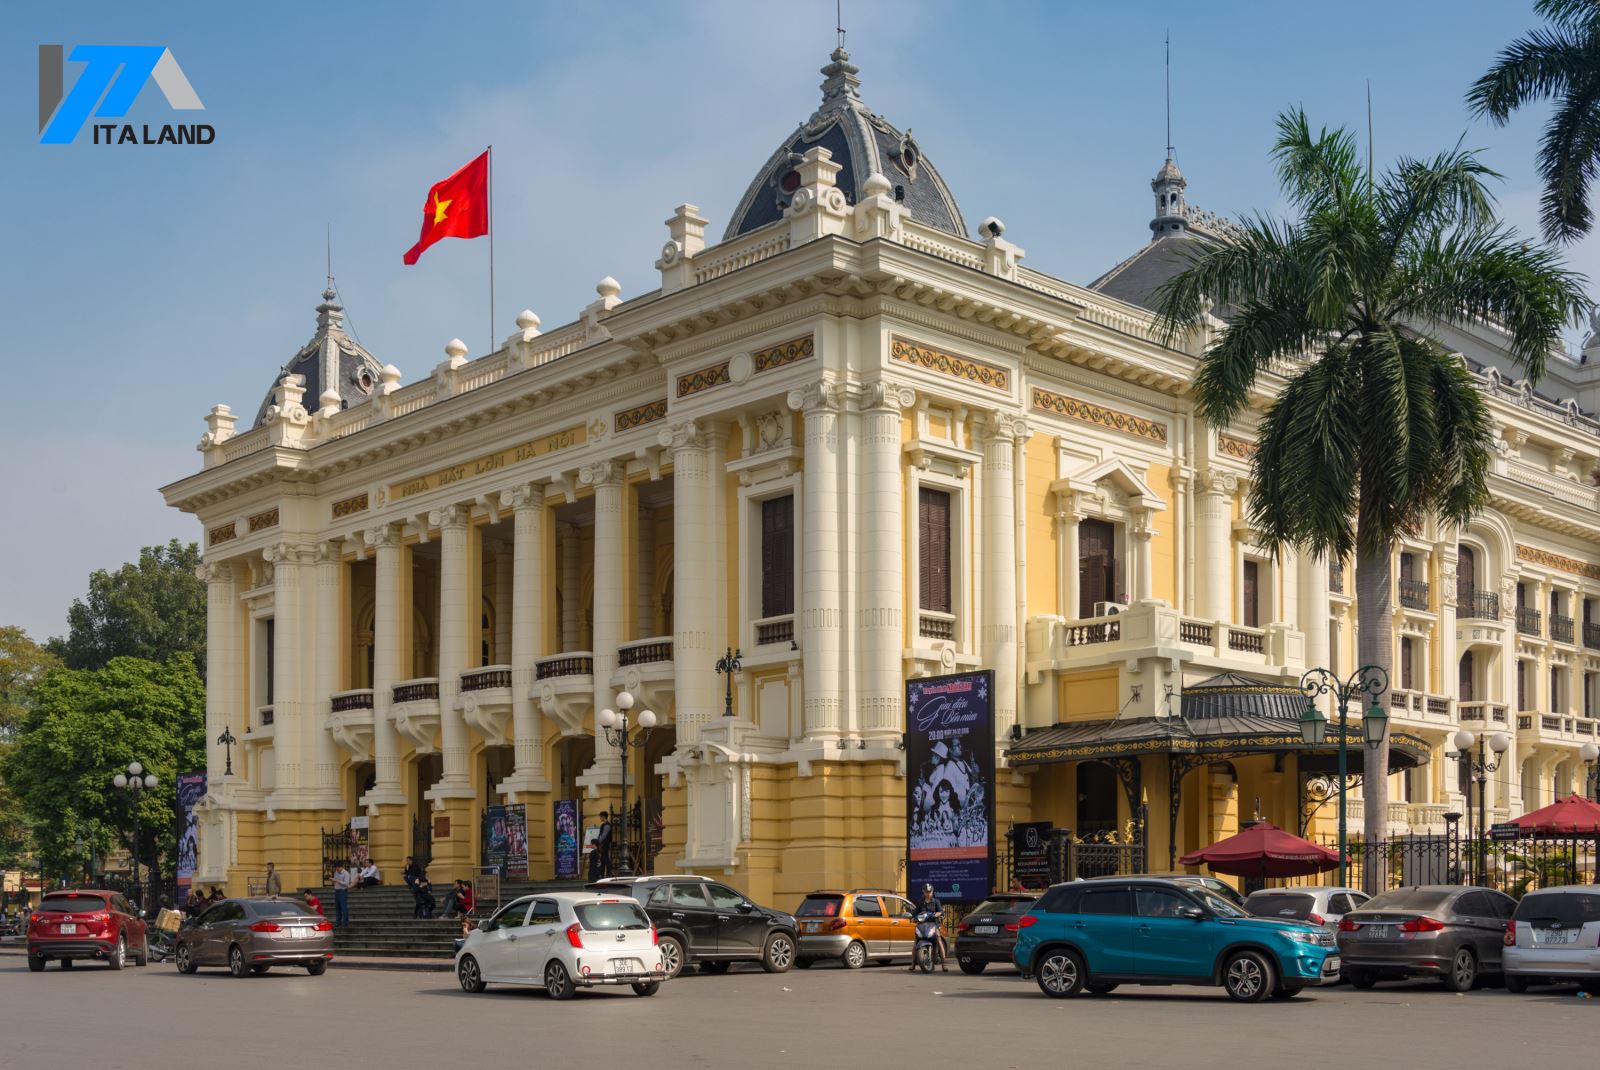 Đâu là quận tập trung nhiều văn phòng nhất tại Hà Nội?